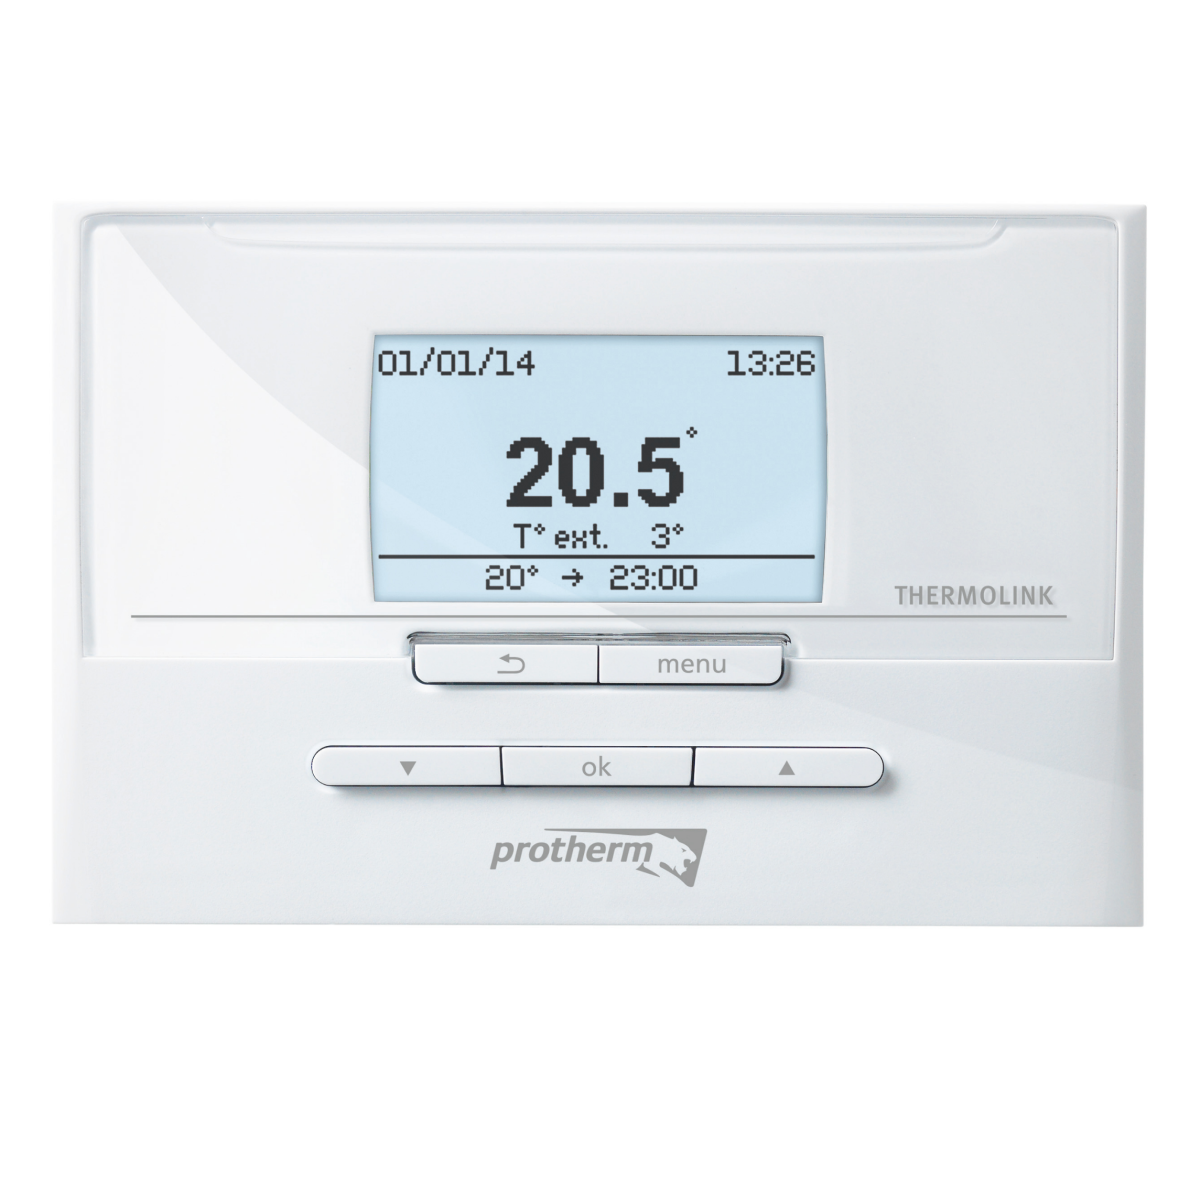 PROTHERM termostat priestorový digitálny Thermolink P, 8586018278812, 0020118083, komunikačné izbové regulátory, izbový regulátor, ovládanie kotla, ako znížiť náklady na vykurovanie, ako znížiť náklady na ohrev vody, nastavenie teploty kotla, nastavenie teploty vody, ovládanie vykurovacieho systému